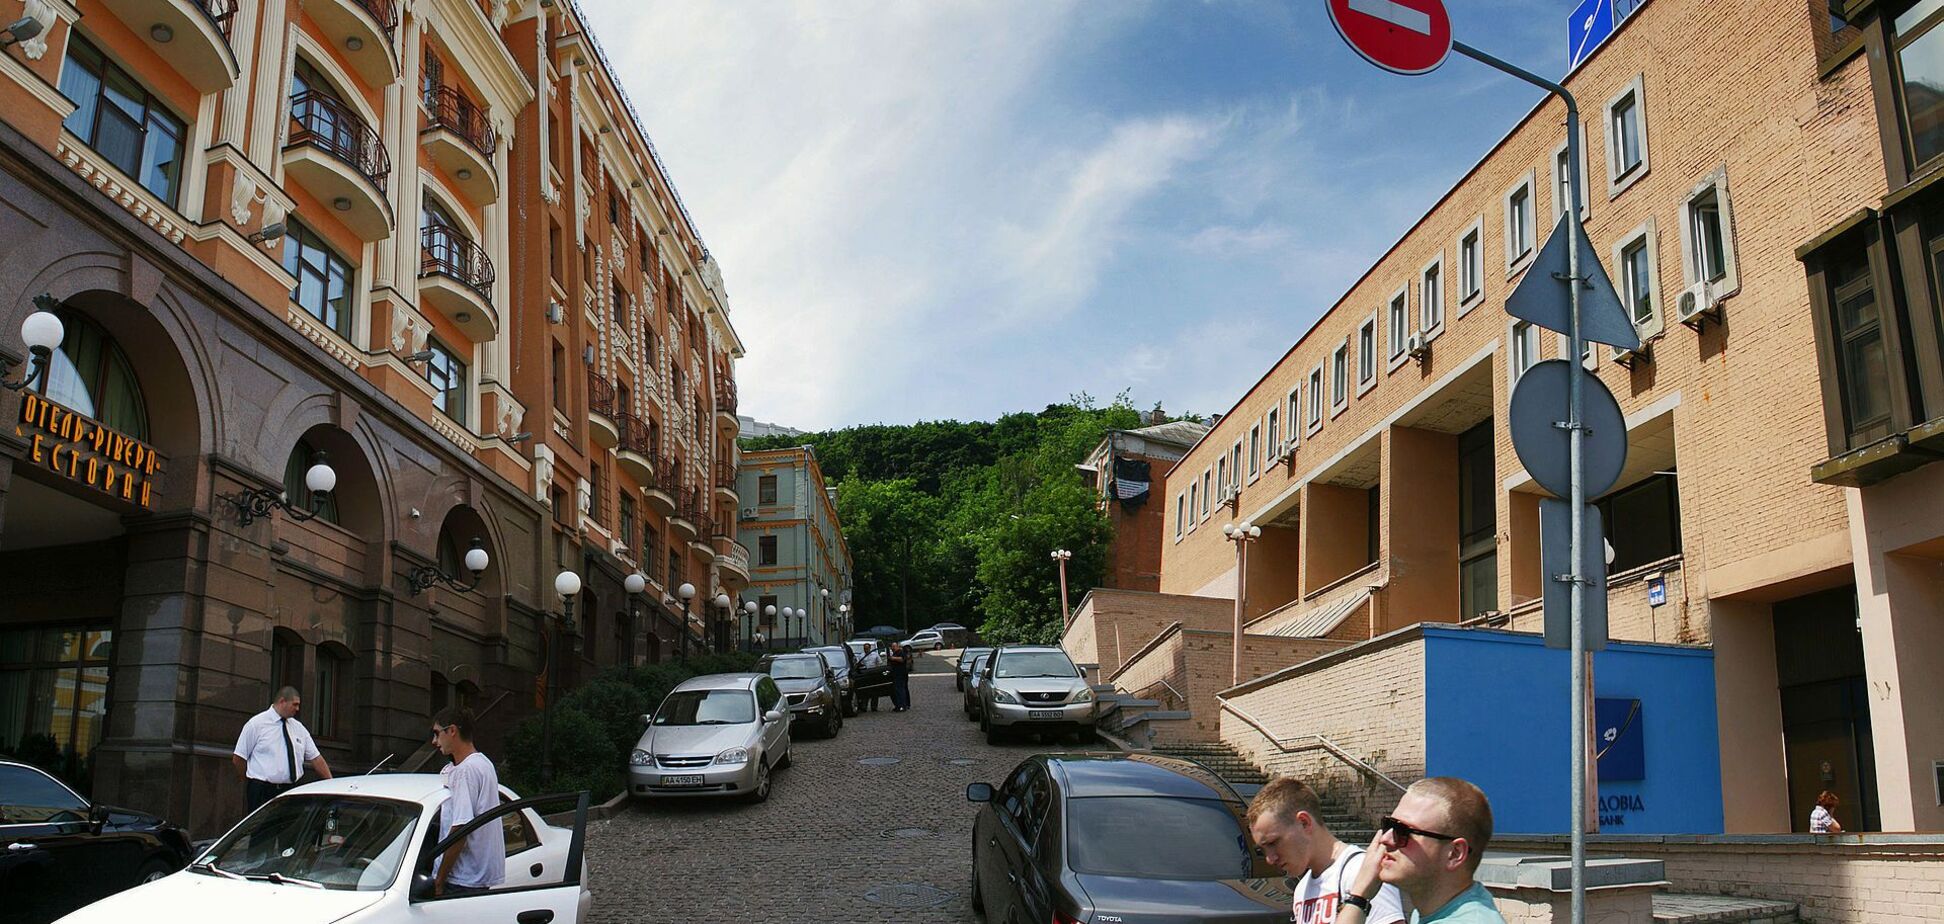 Боричів узвіз є однією із найстаріших вулиць столиці